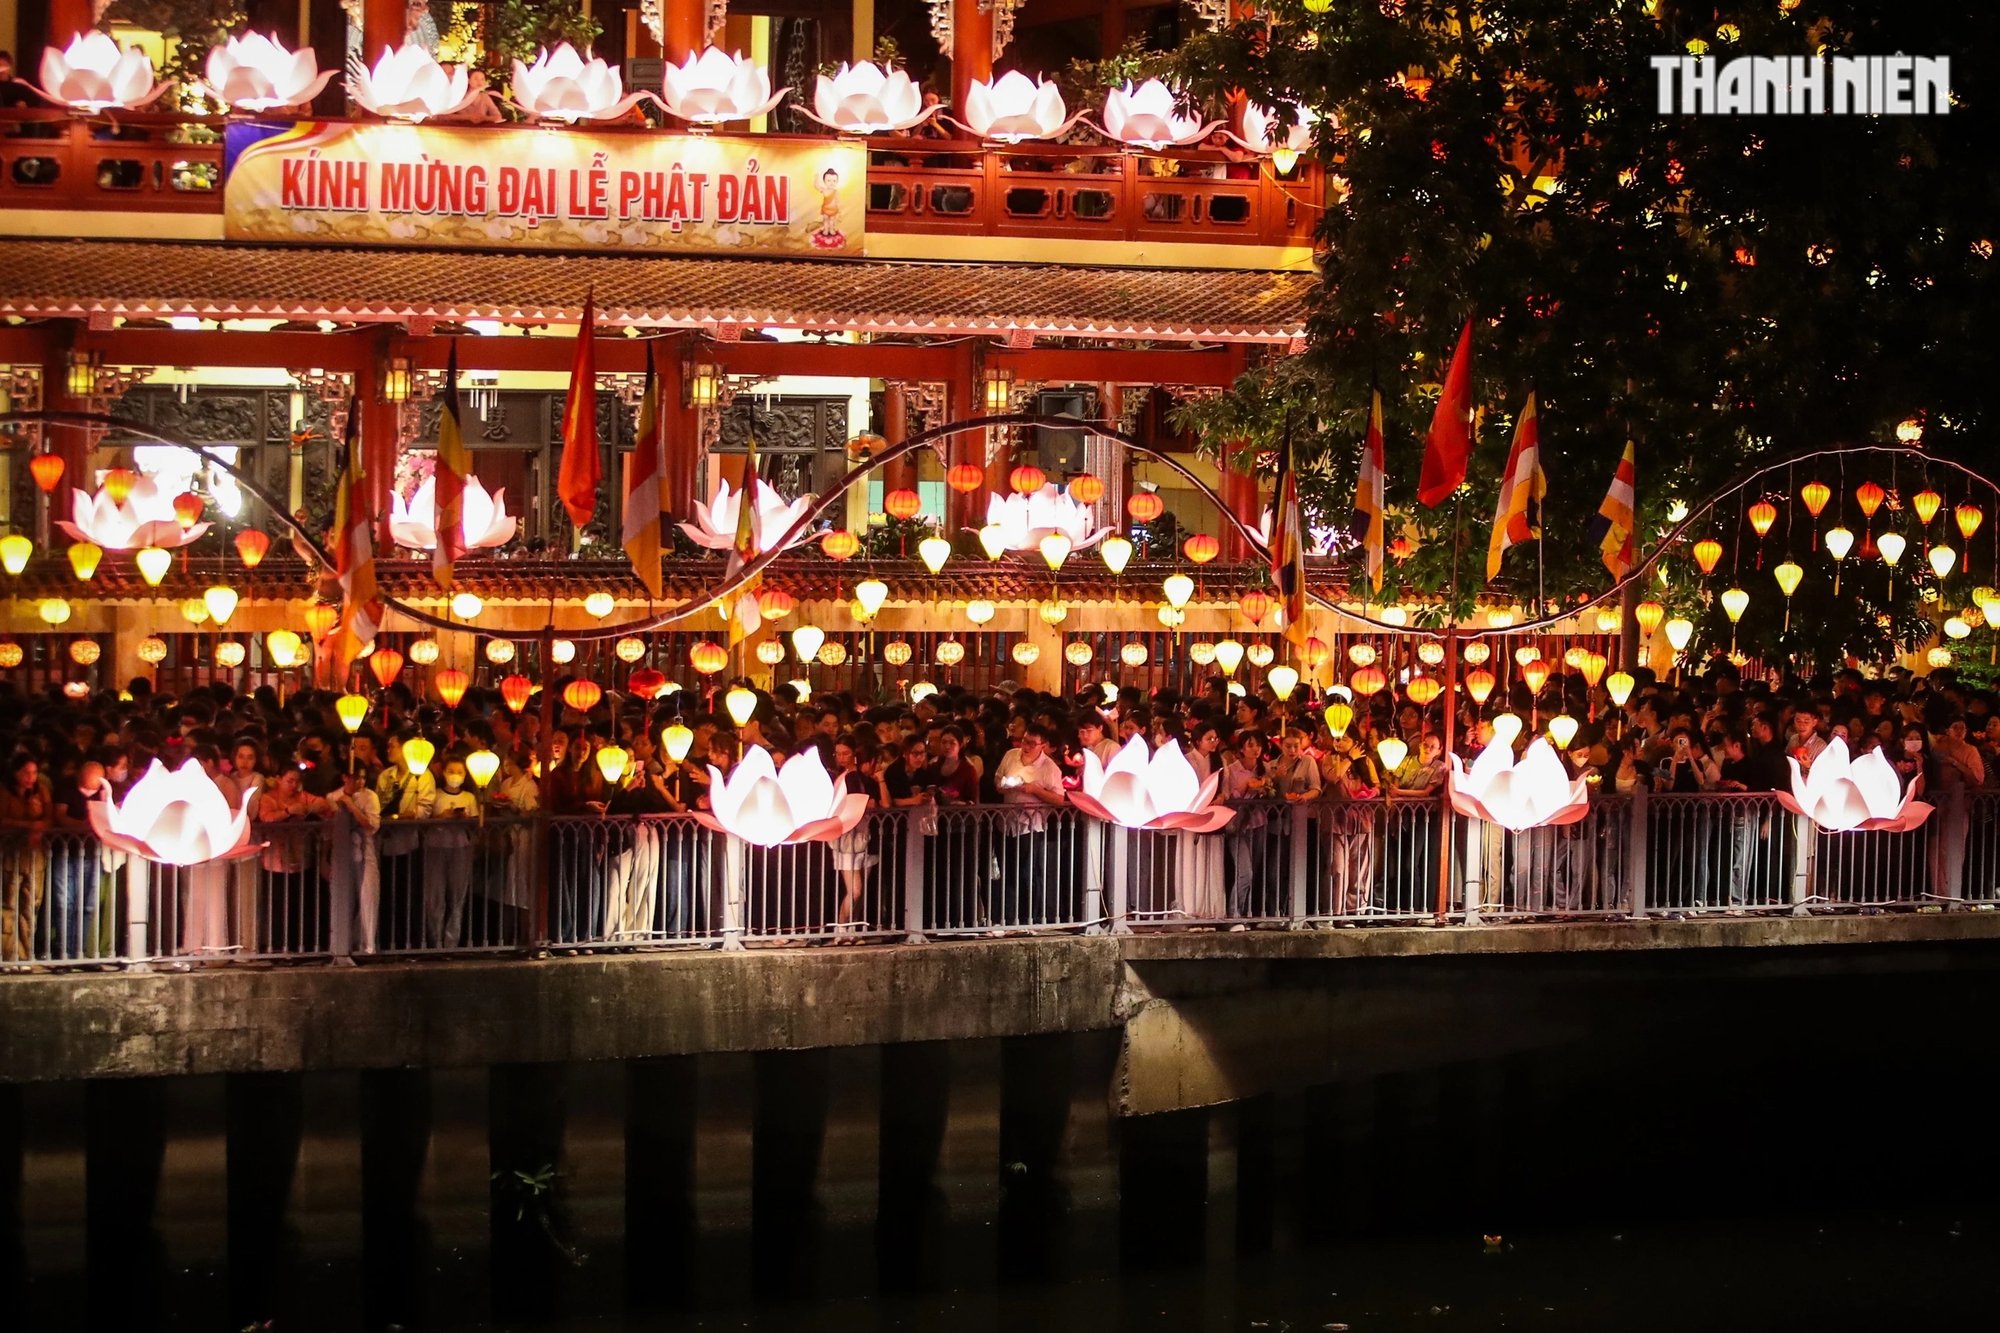 Trong khuôn viên chùa hàng ngàn người dân tham gia thả hoa đăng chen nhau, cố gắng cầm hoa đăng giơ cao để nhích từng chút một tiến về phía bờ kênh Nhiêu Lộc